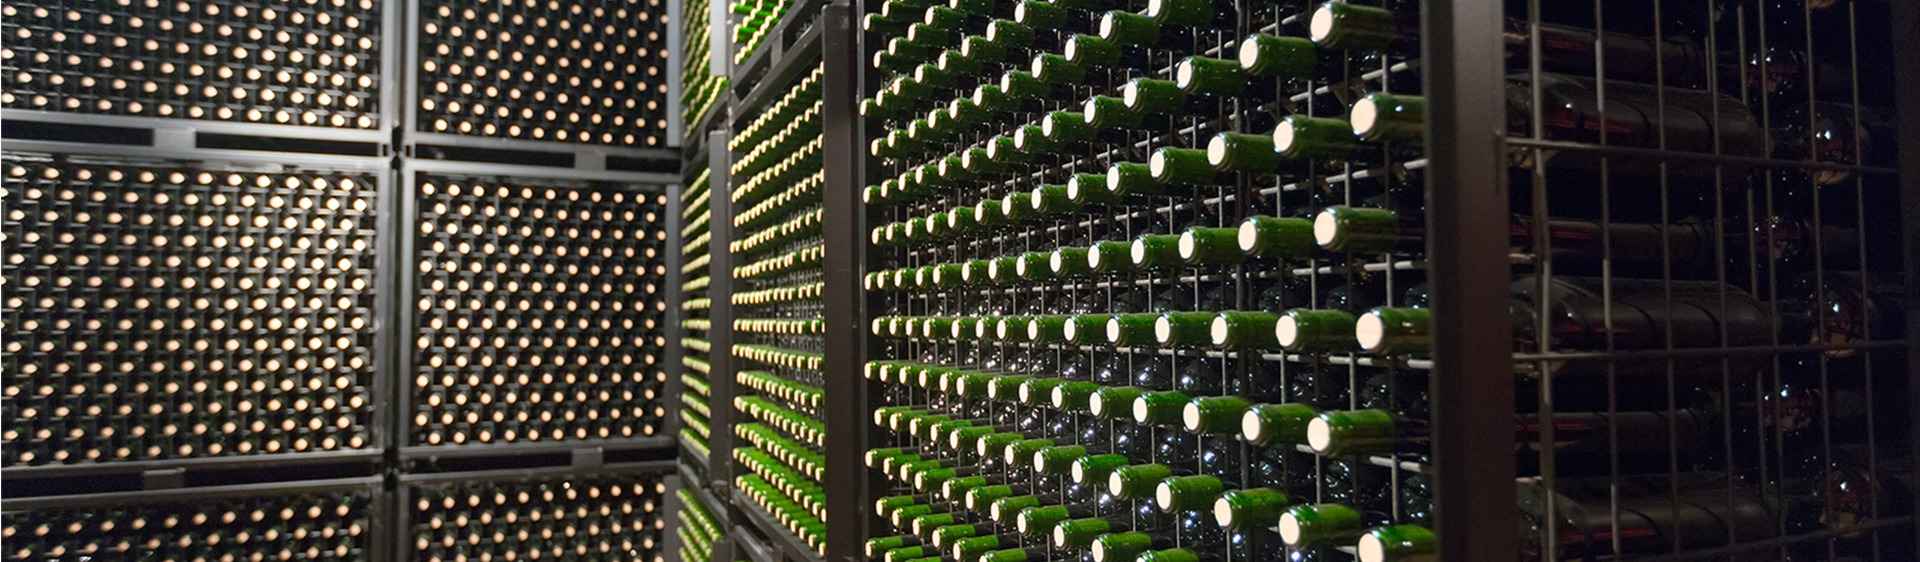 Le marché Export des vins de l’appellation Vin de France de Terroirs Originels